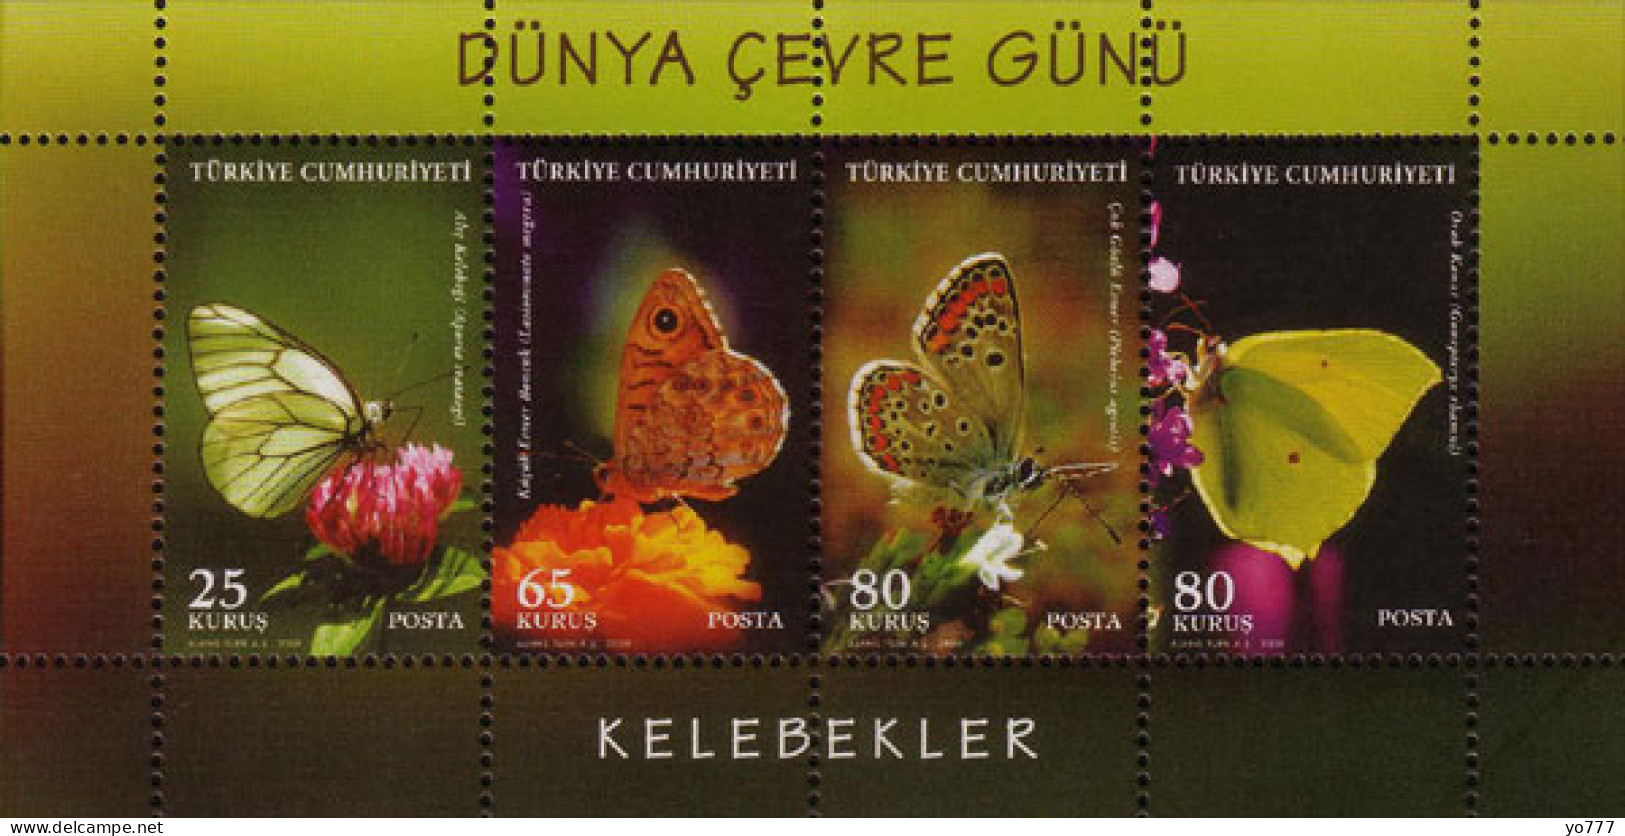 (3746-49 BL-71) TURKEY WORLD ENVIRONMENT DAY SOUVENIR SHEET (BUTTERFLIES) MNH ** - Ongebruikt